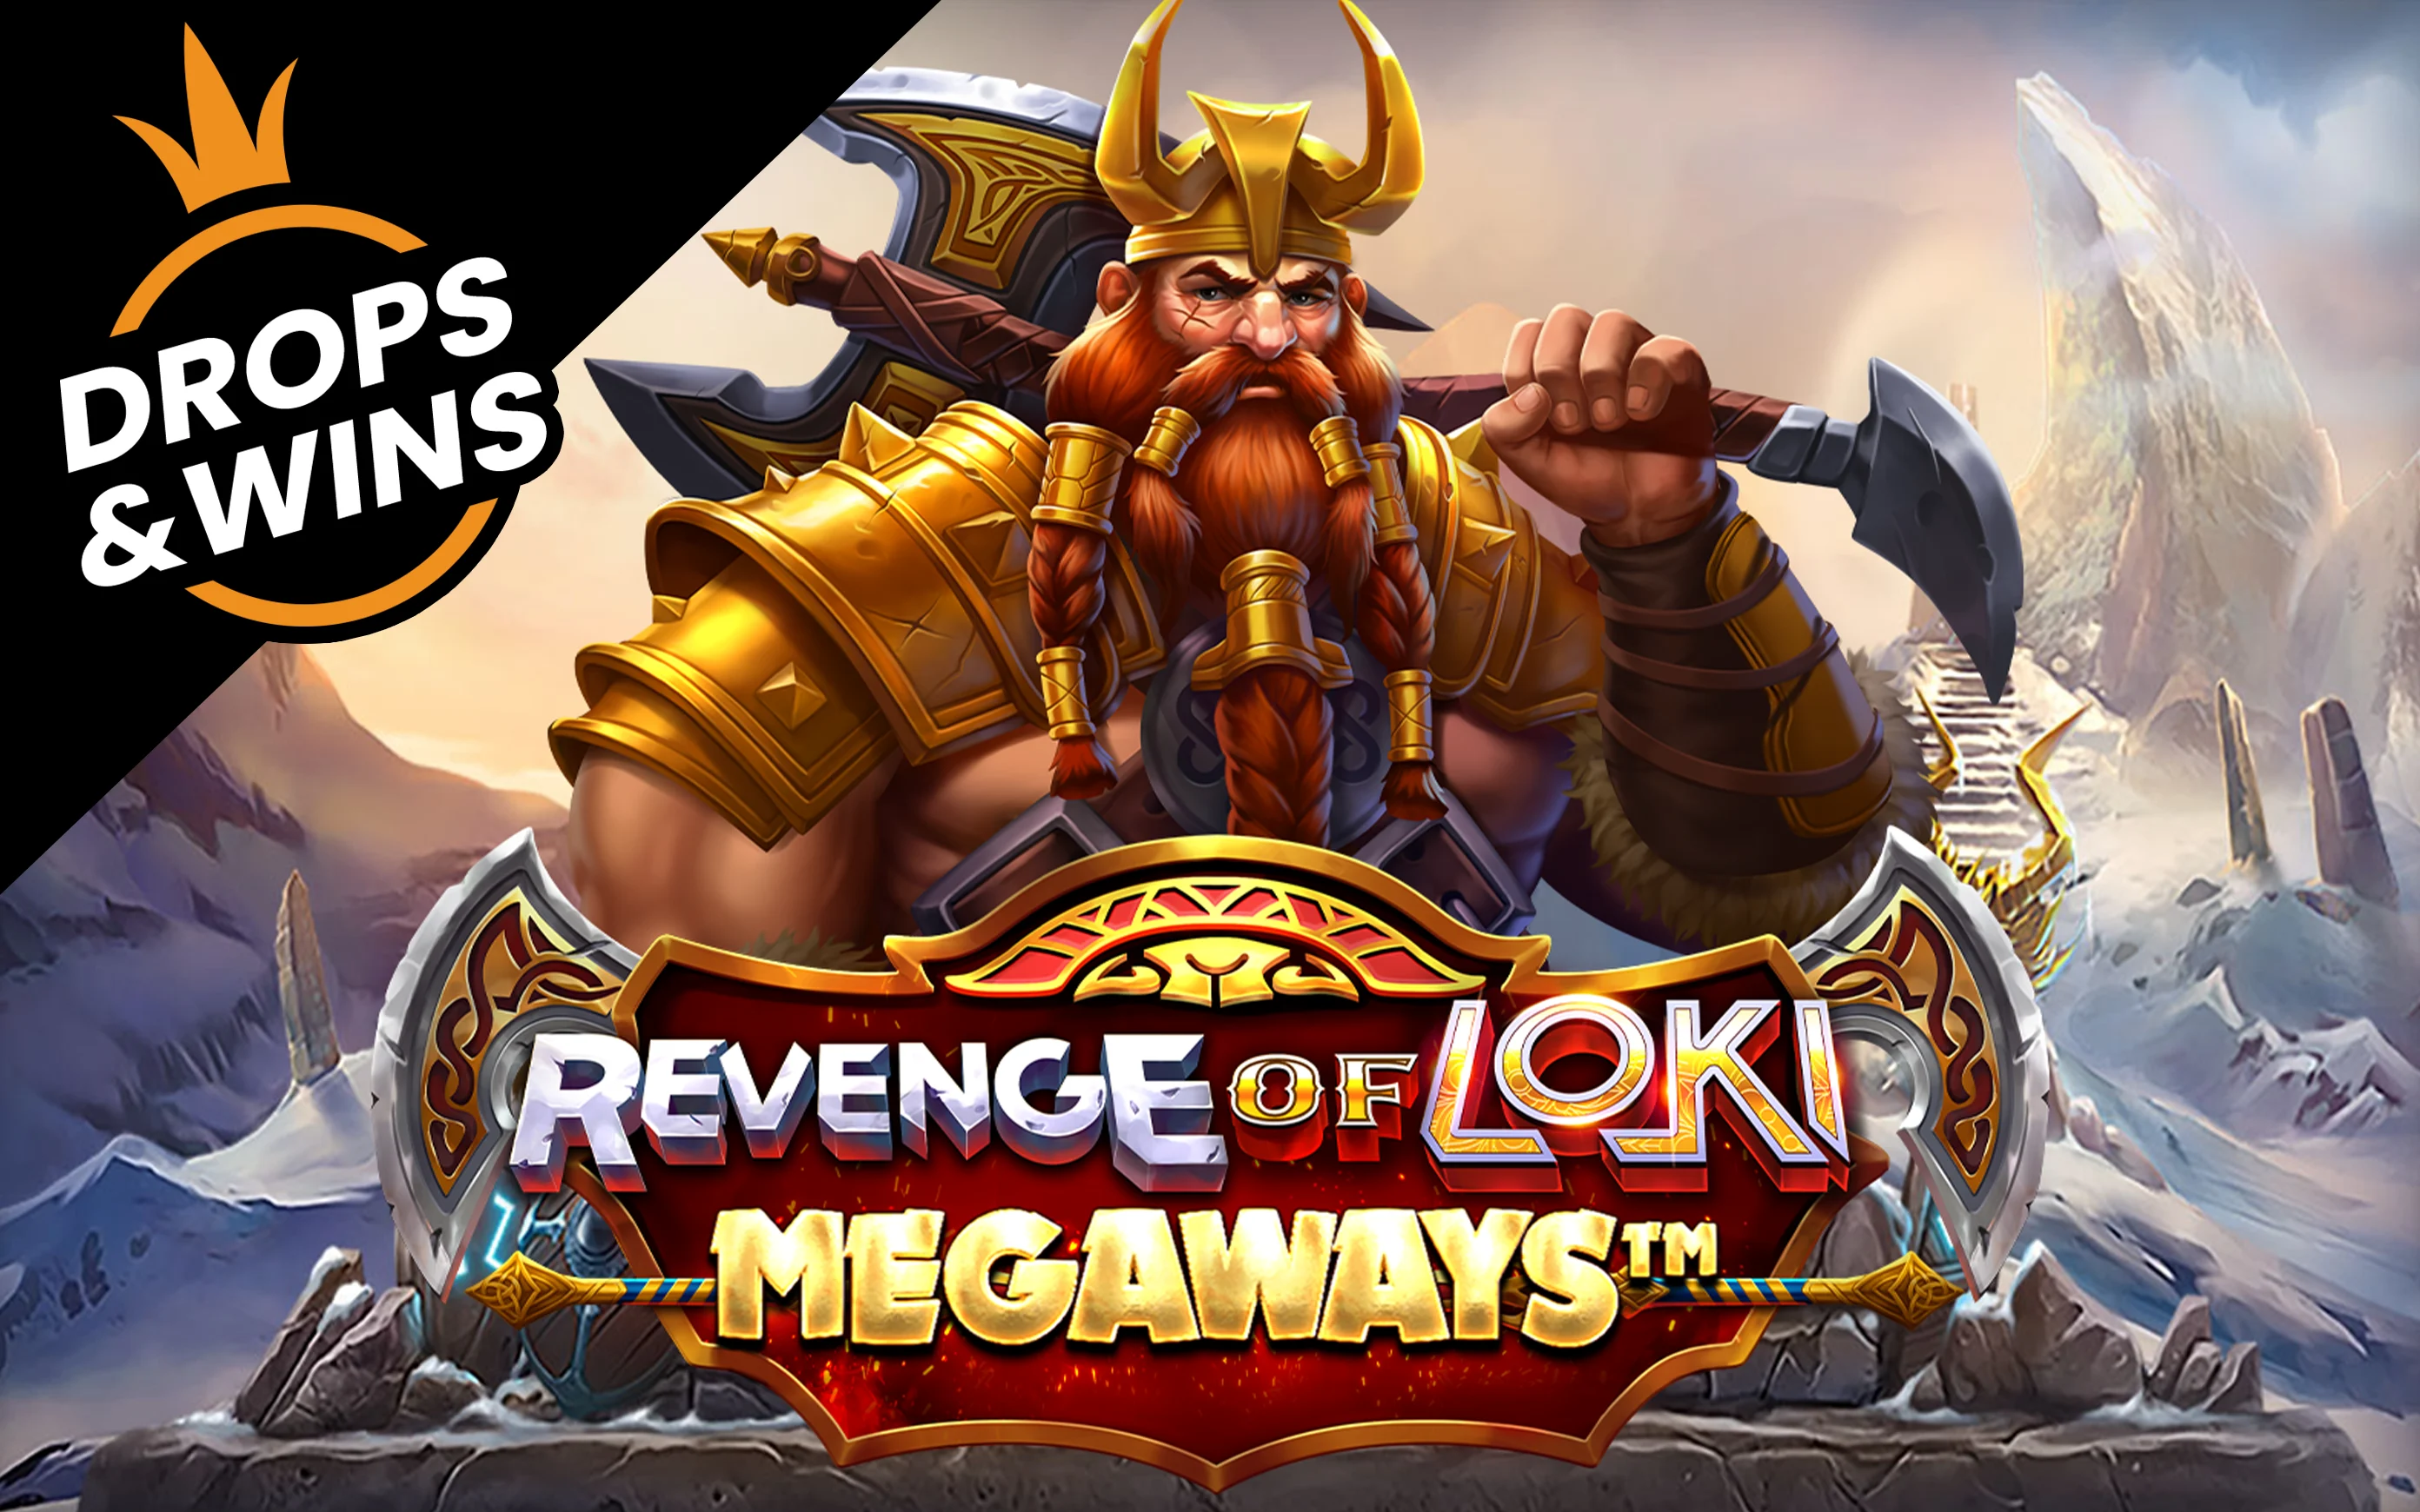 เล่น Revenge of Loki Megaways บนคาสิโนออนไลน์ Starcasino.be